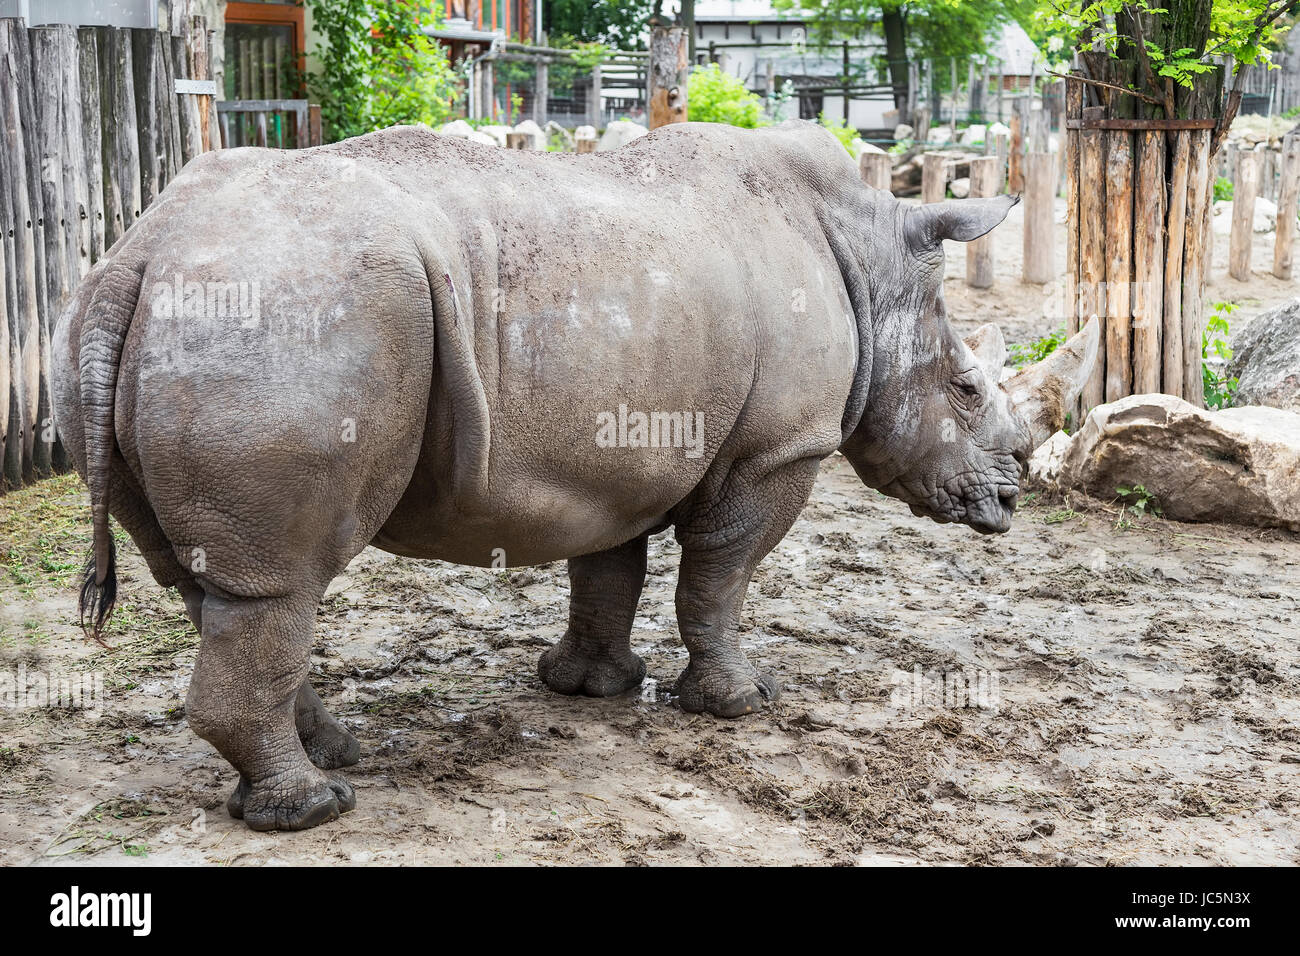 Big rhino sleeps standing in his paddock Stock Photo